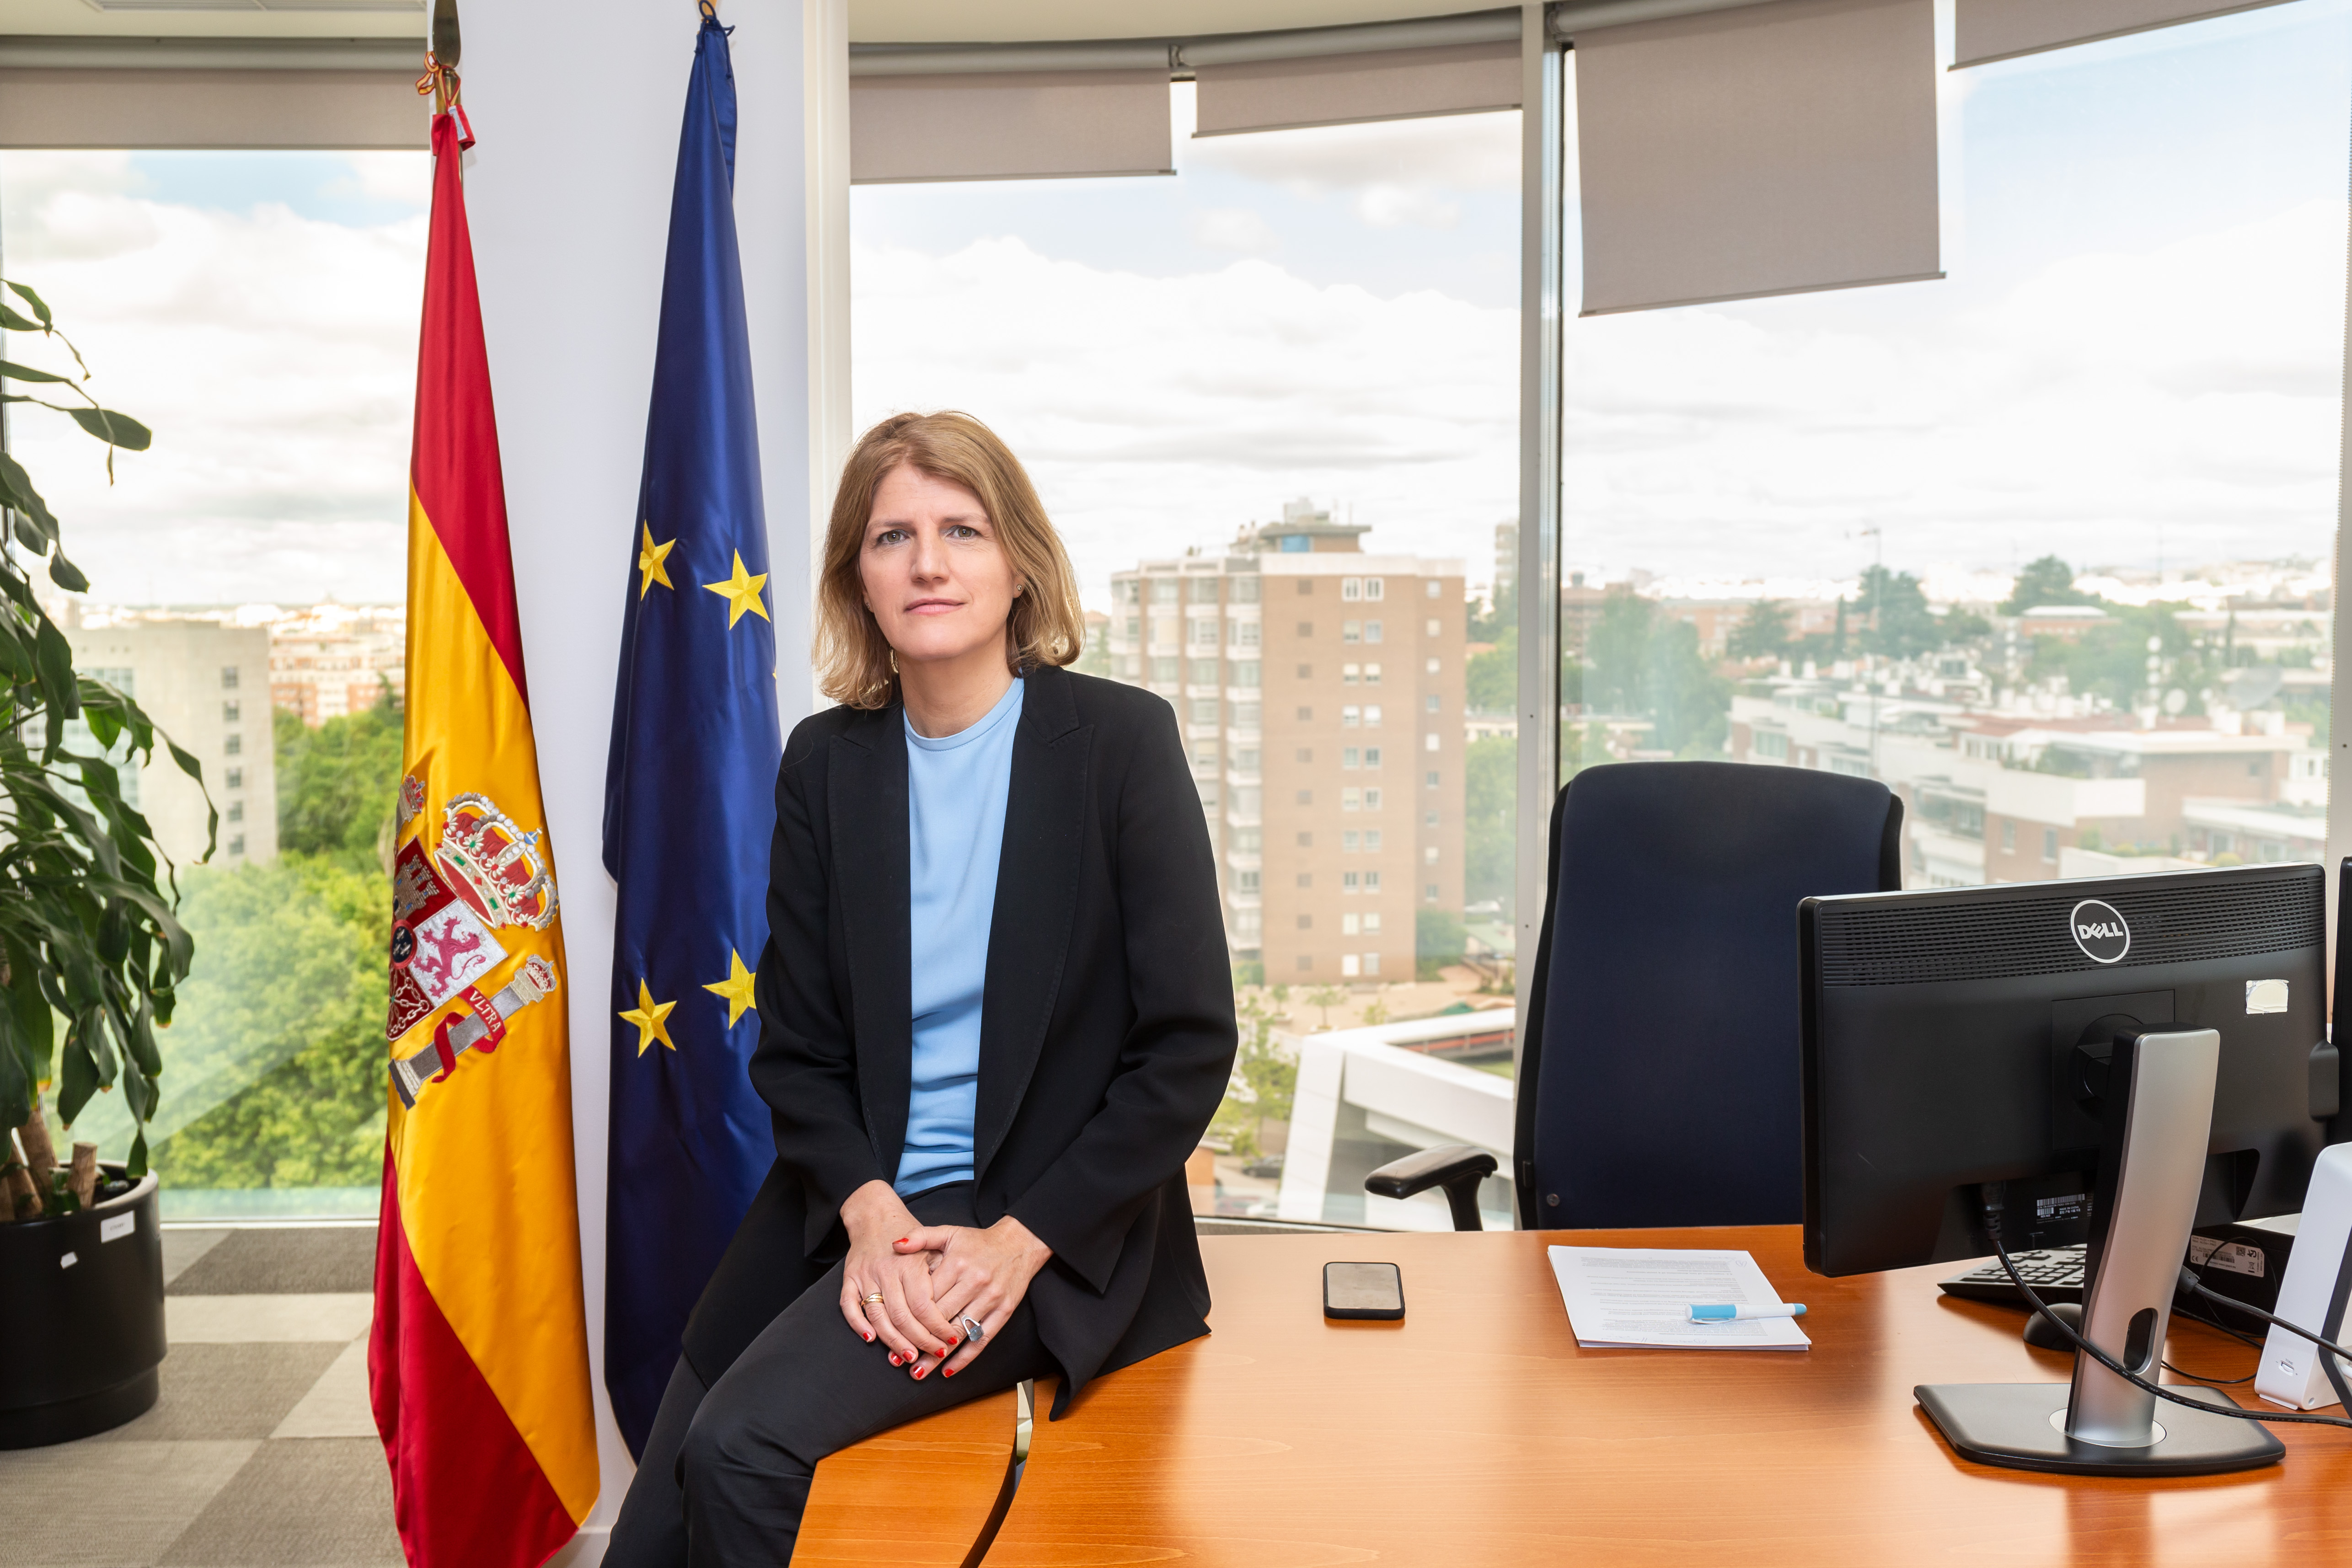  Imagen de Helena Viñes, consejera de la CNMV, sentada en su despacho (se abrirá ventana nueva)